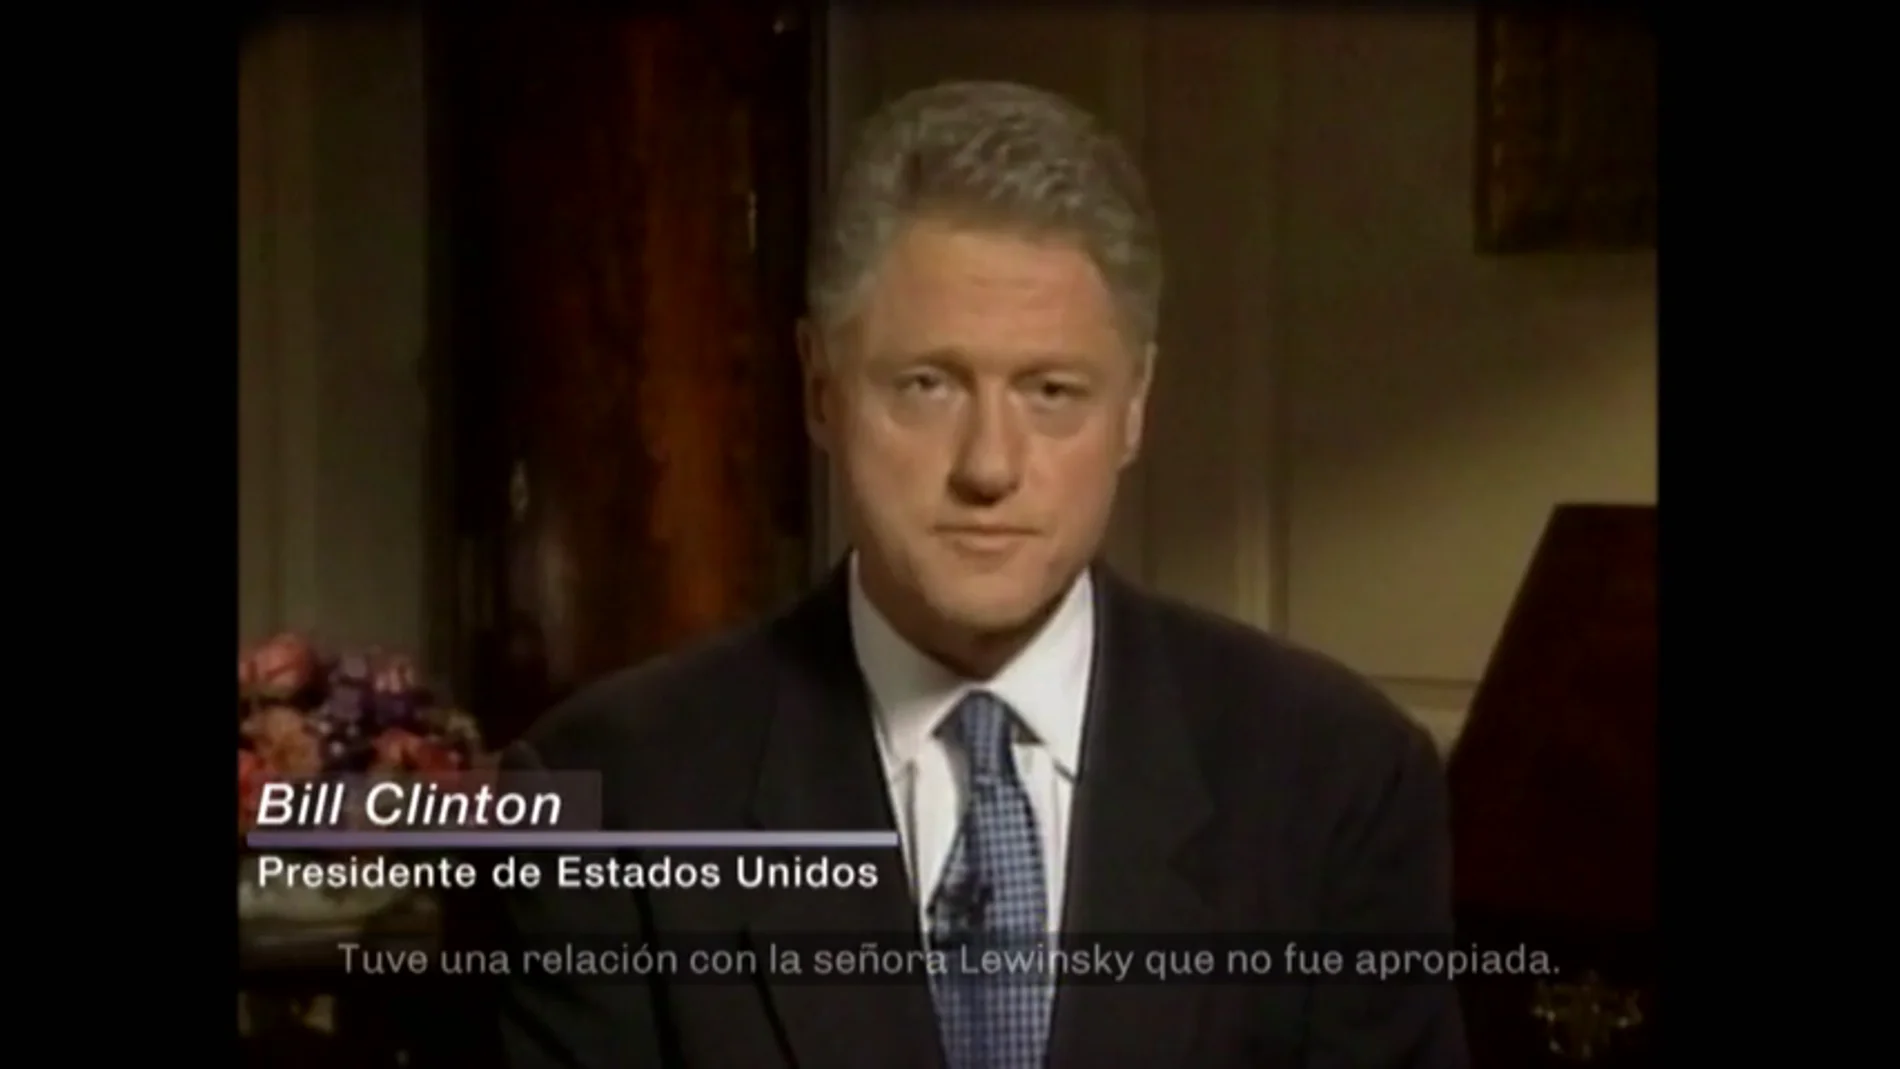 El lanzamiento de Google y la relación de Bill Clinton con Lewinsky: los acontecimientos internacionales más destacados de 1998